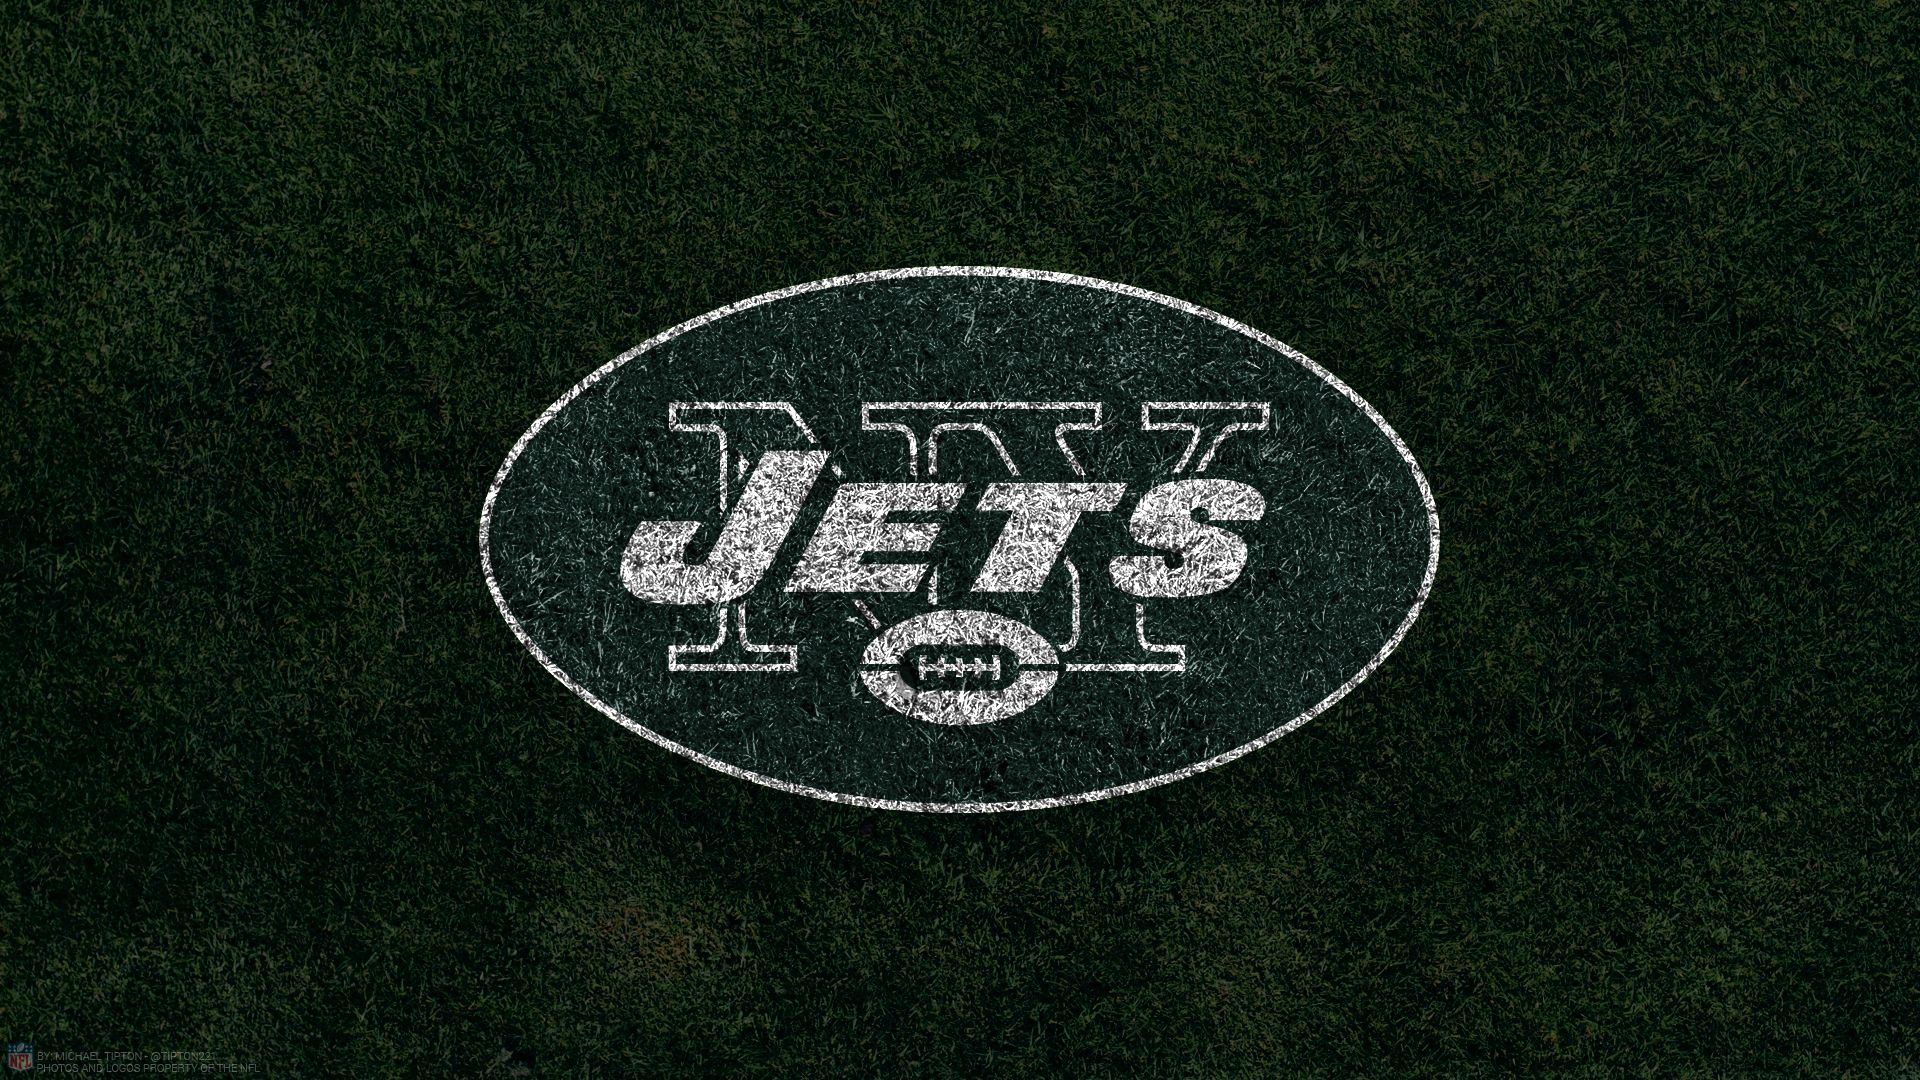 new york jets, sports, emblem, logo, nfl, football